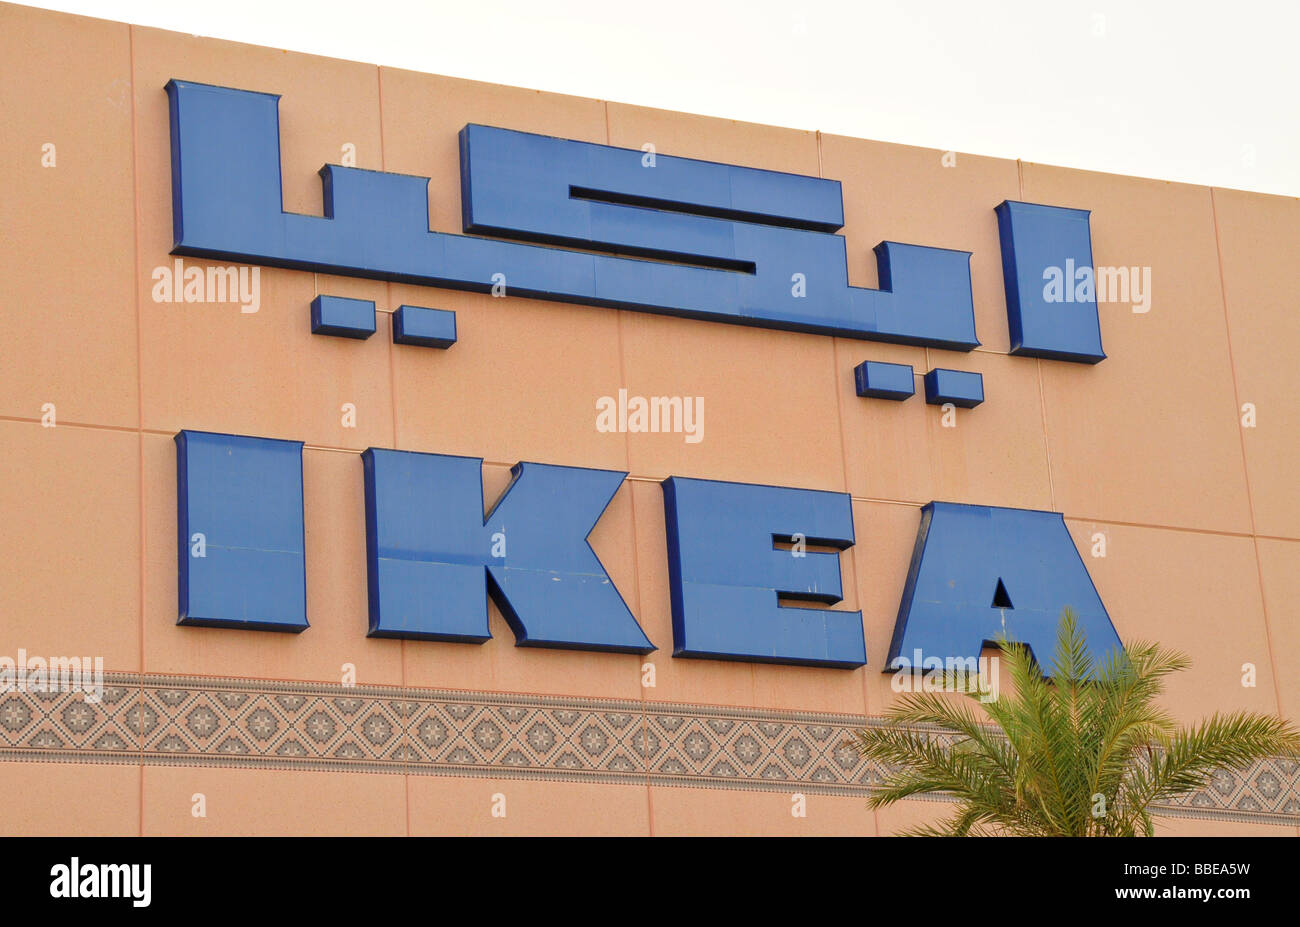 Signo de la tienda de Ikea en el rompeolas del distrito de Abu Dhabi, Emiratos Árabes Unidos, Arabia, Oriente Medio Oriente Foto de stock